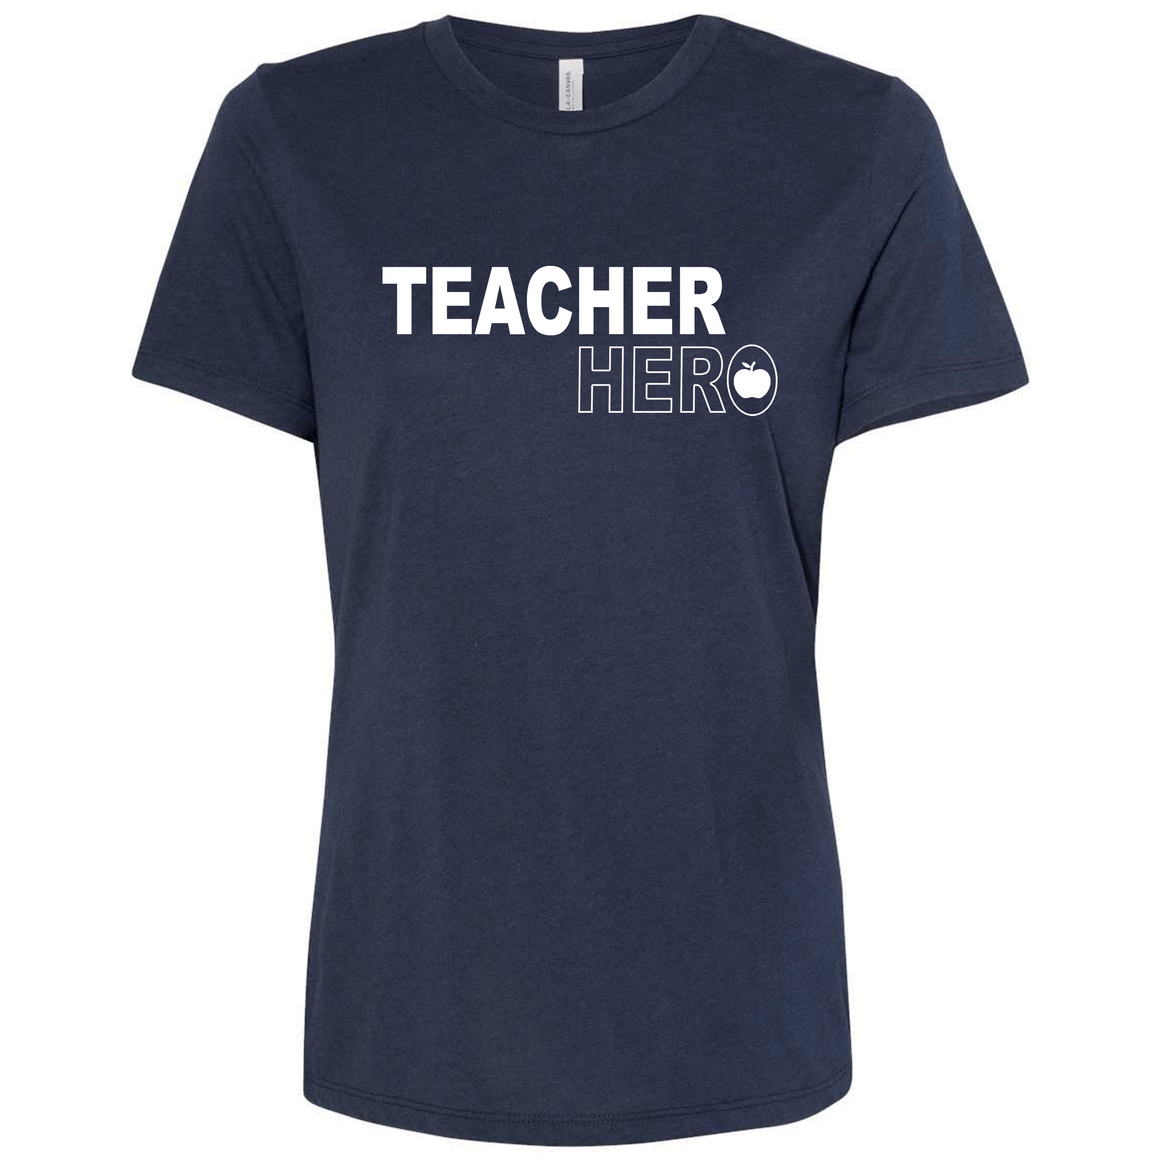 Triblend Women's Relaxed Fit Teacher Hero T-Shirt